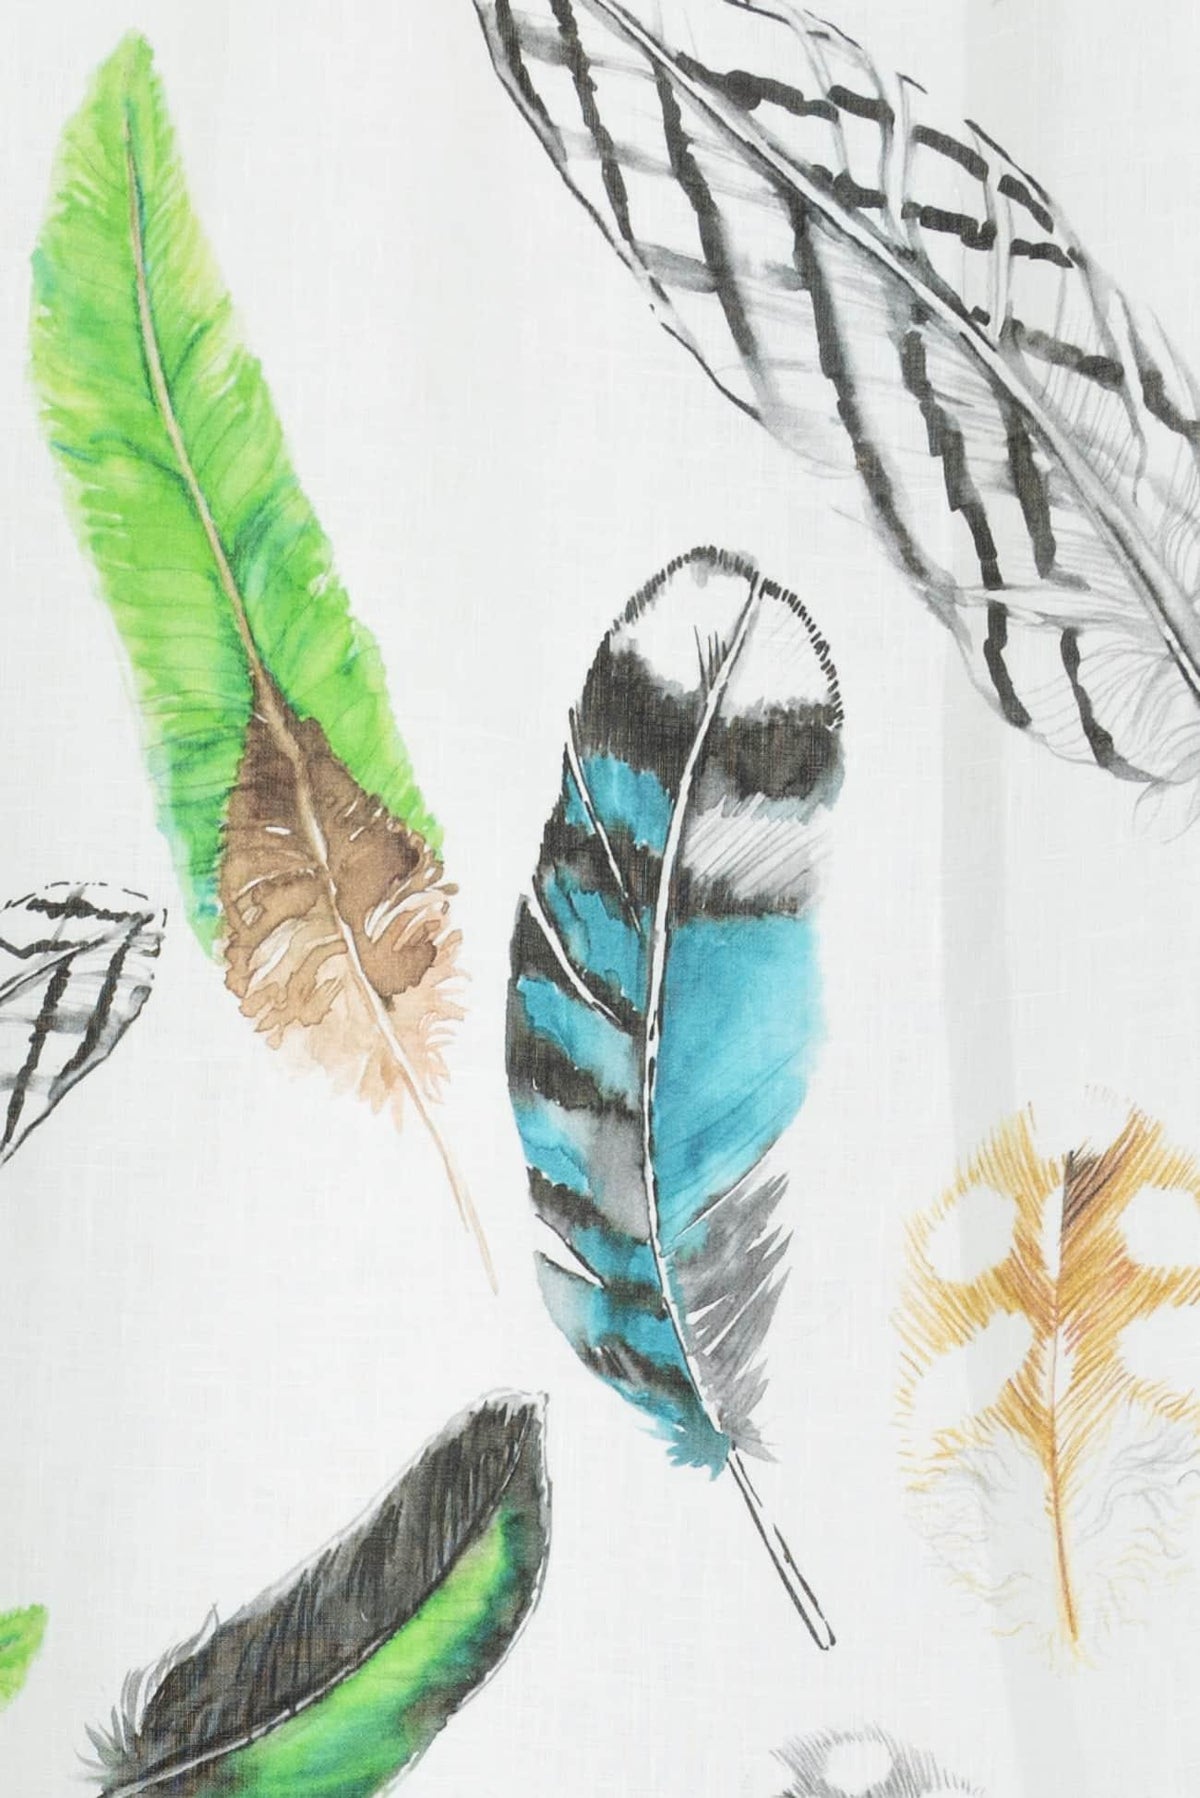 Fine Feathers Linen Woven - Marcy Tilton Fabrics